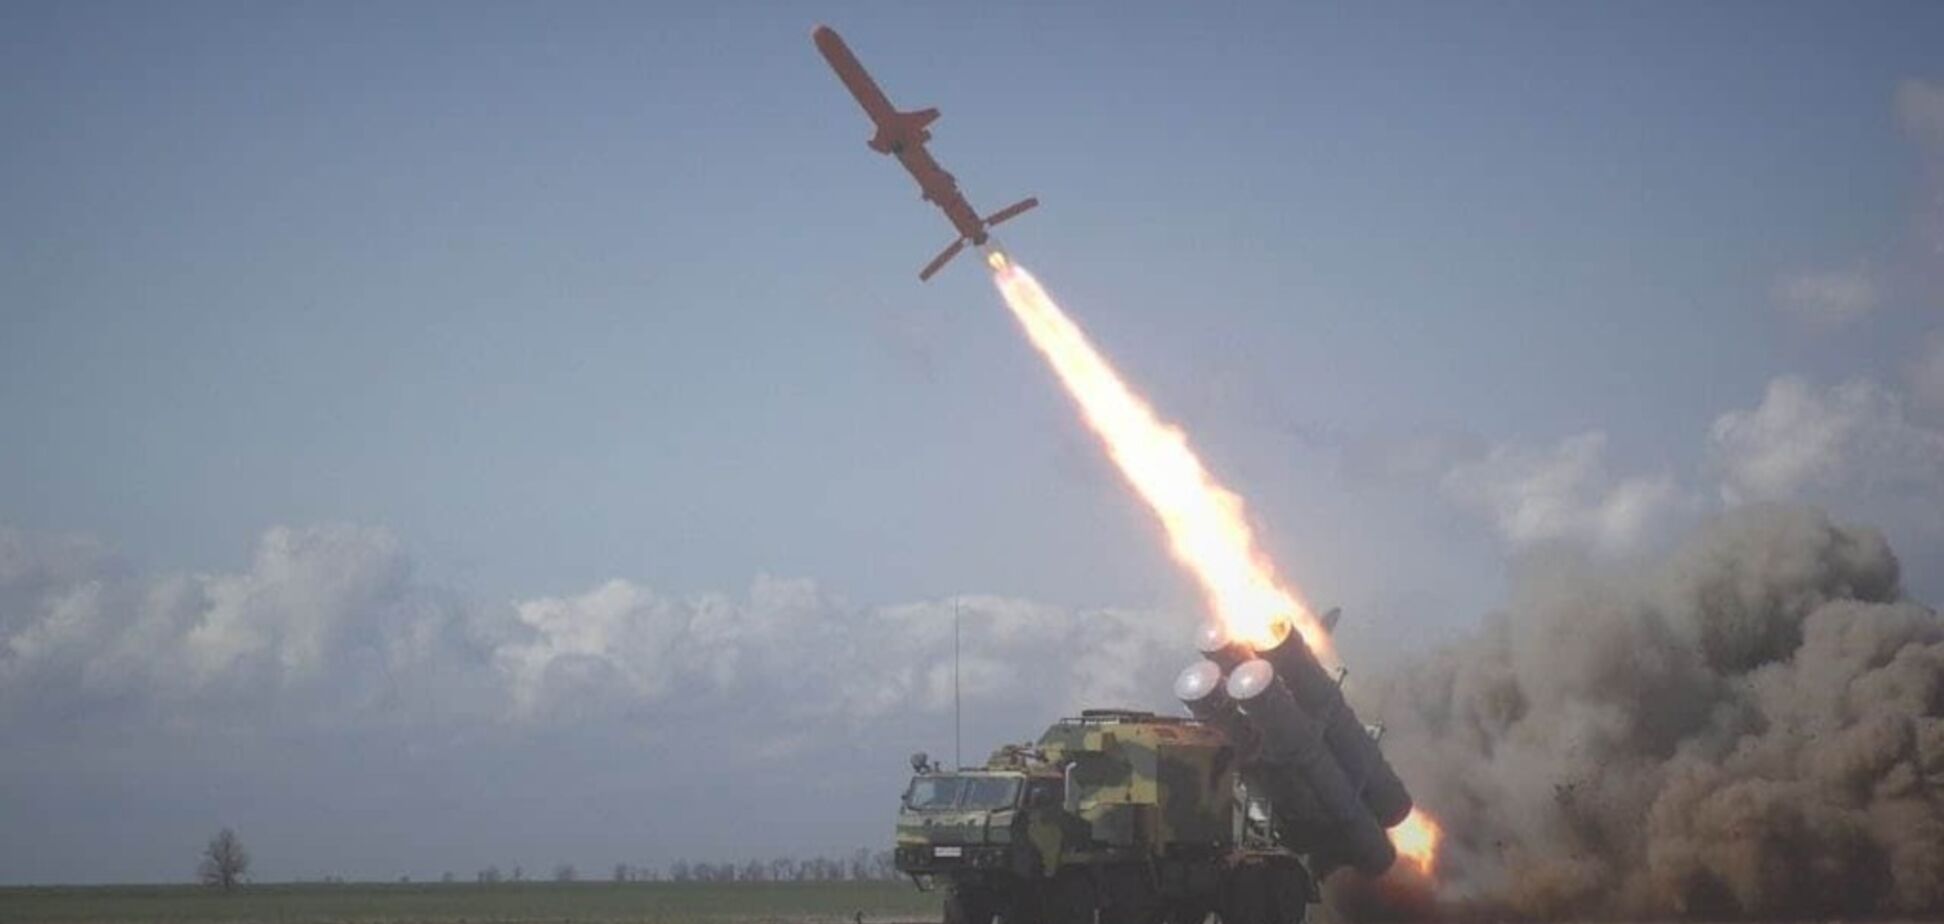 Уникальные кадры: в сети показали полет новой украинской ракеты 'Нептун' с истребителями. Видео